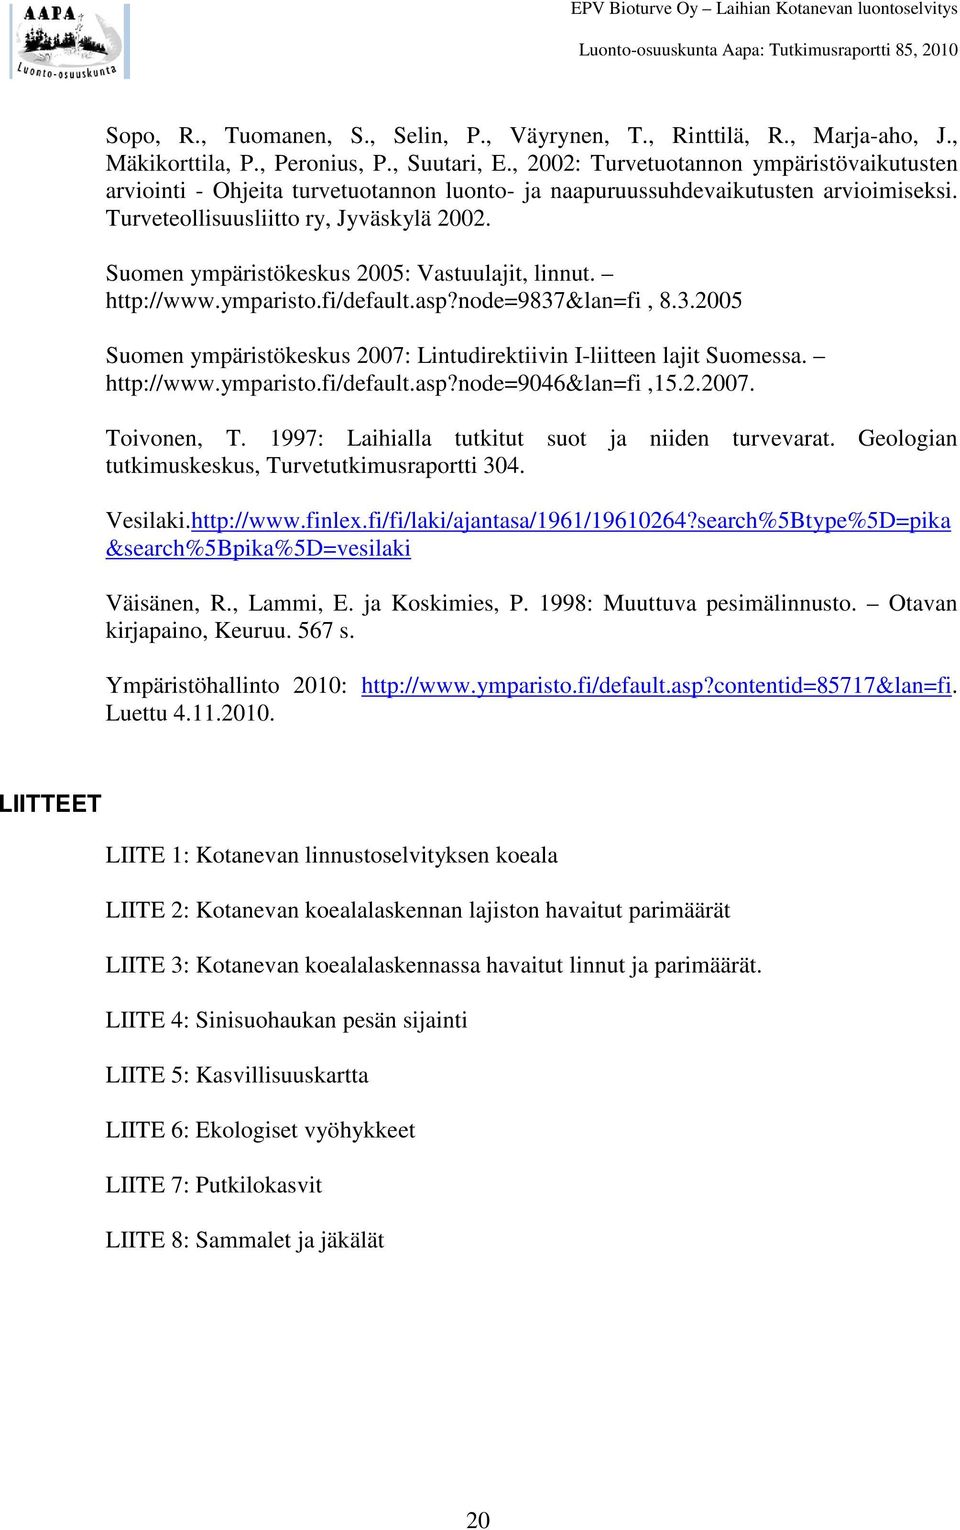 Suomen ympäristökeskus 2005: Vastuulajit, linnut. http://www.ymparisto.fi/default.asp?node=9837&lan=fi, 8.3.2005 Suomen ympäristökeskus 2007: Lintudirektiivin I-liitteen lajit Suomessa. http://www.ymparisto.fi/default.asp?node=9046&lan=fi,15.